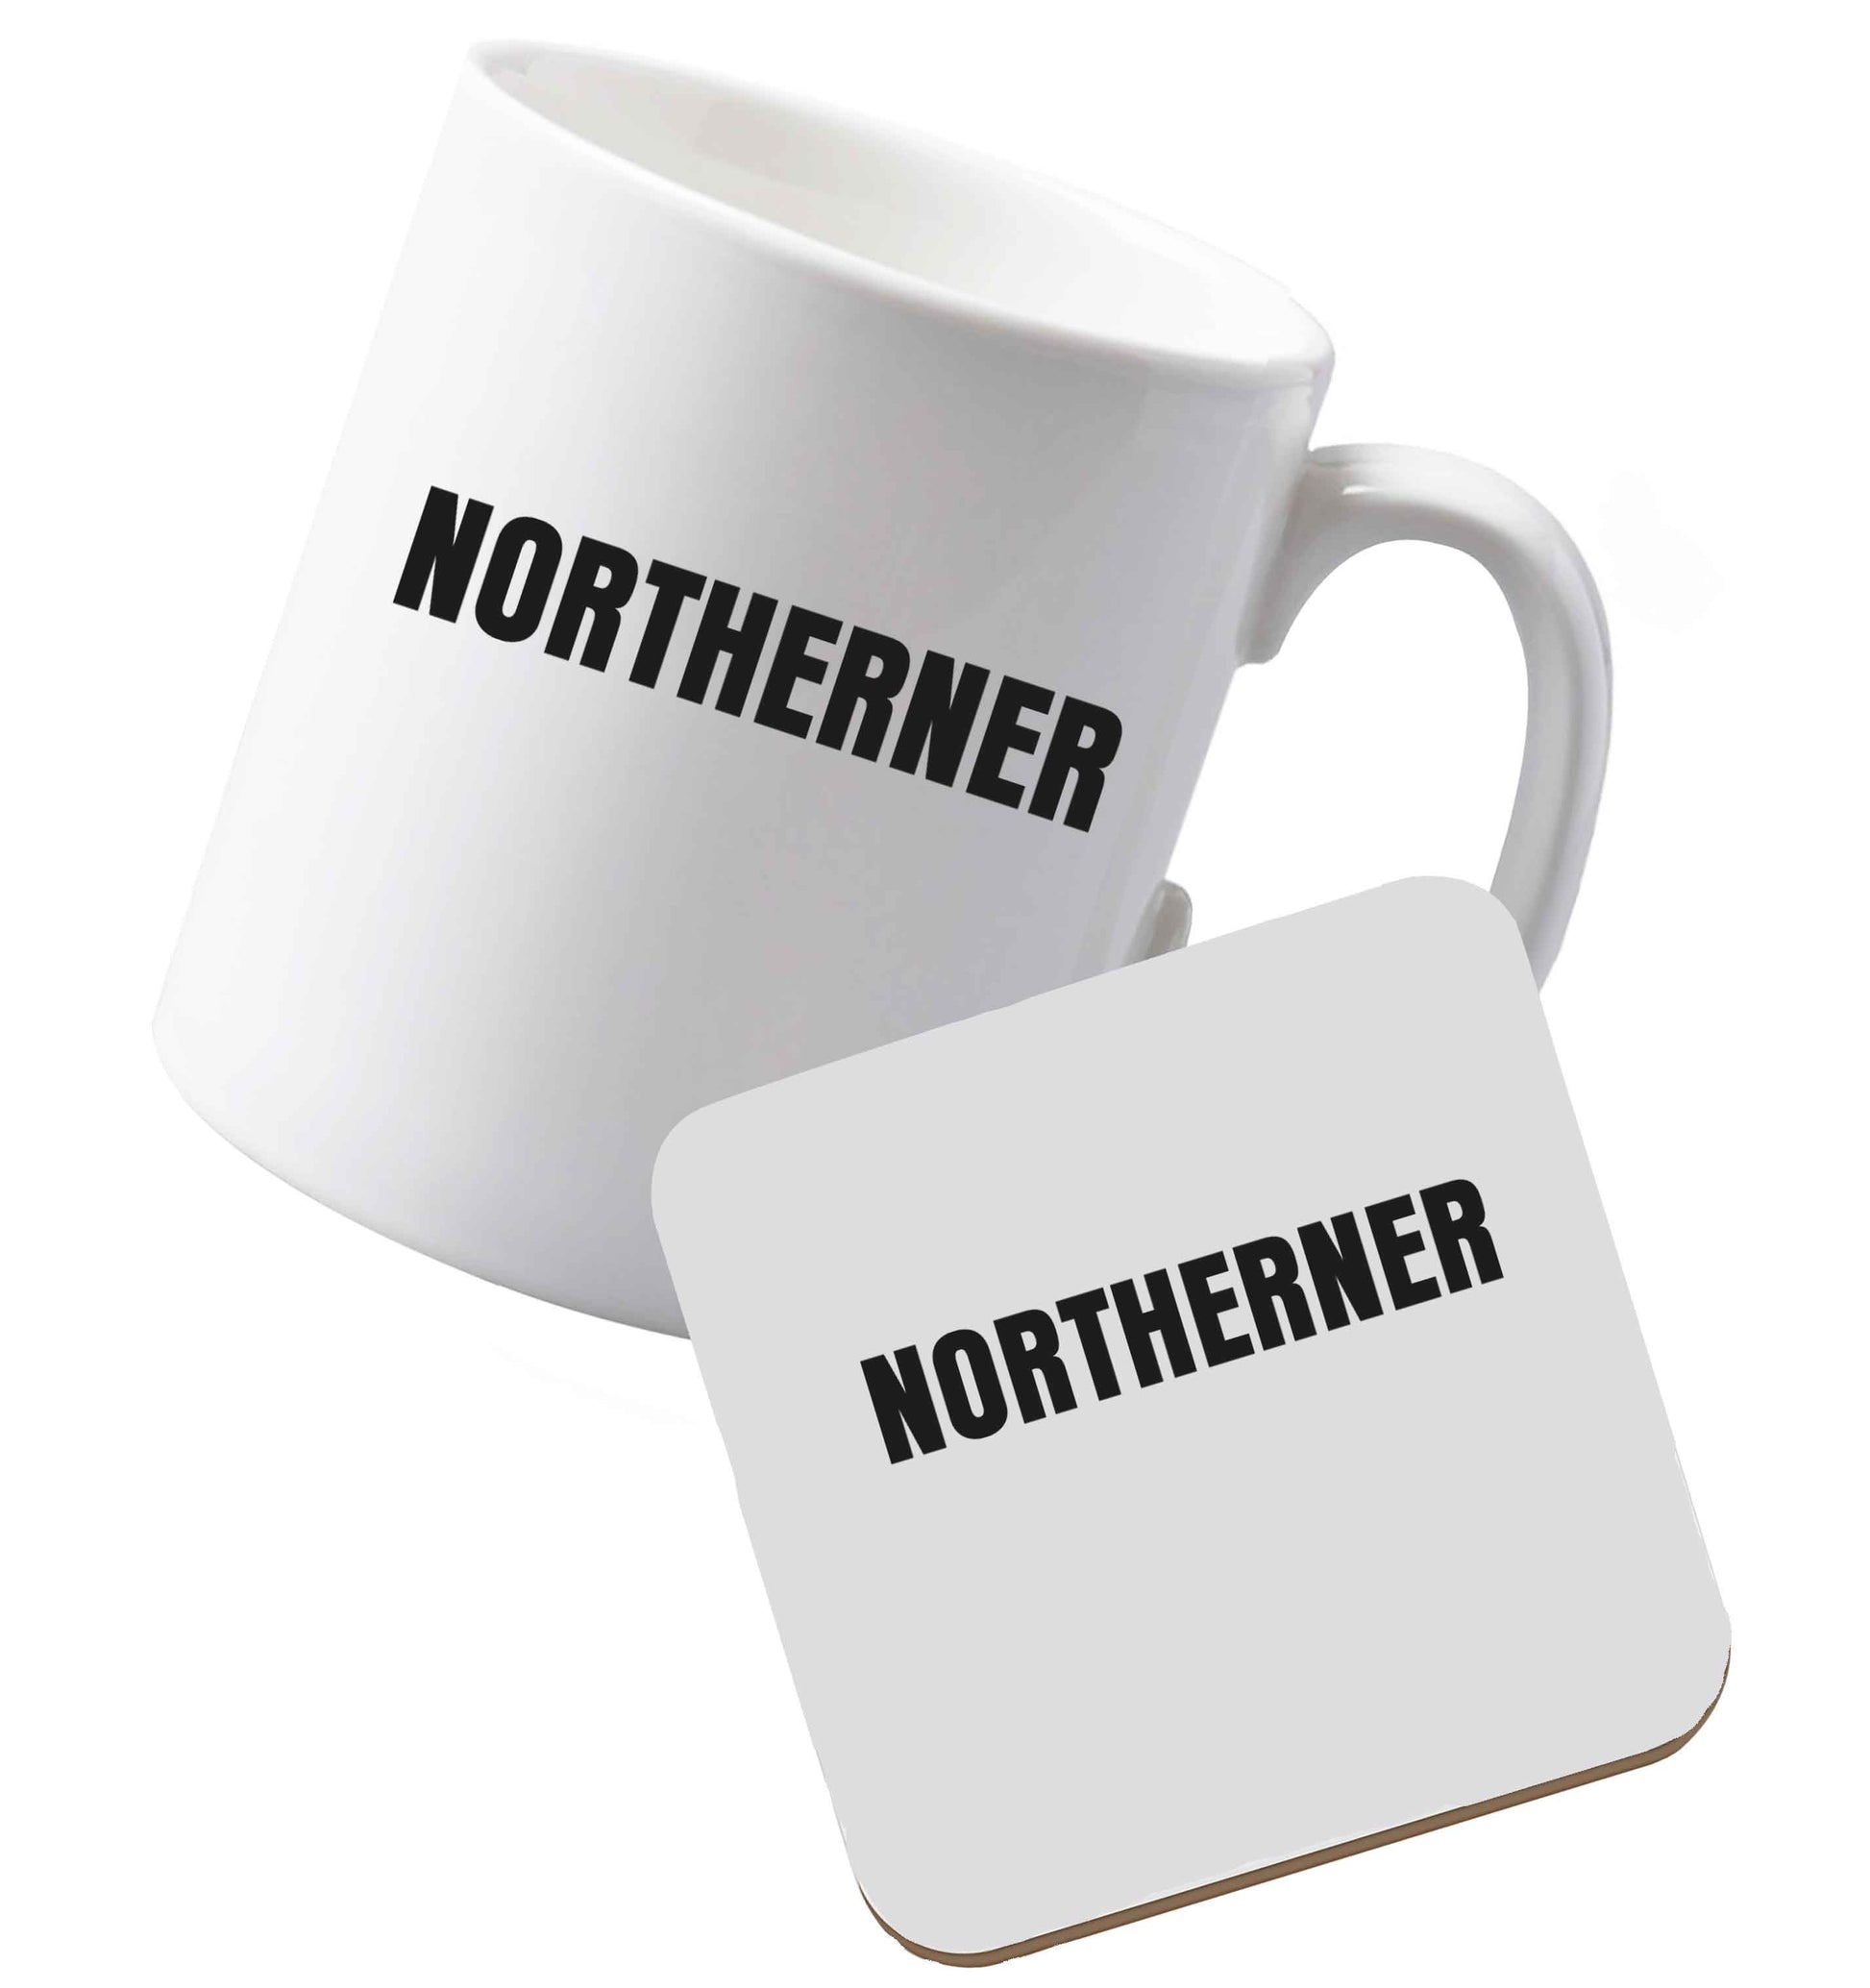 10 oz Ceramic mug and coaster Northerner both sides